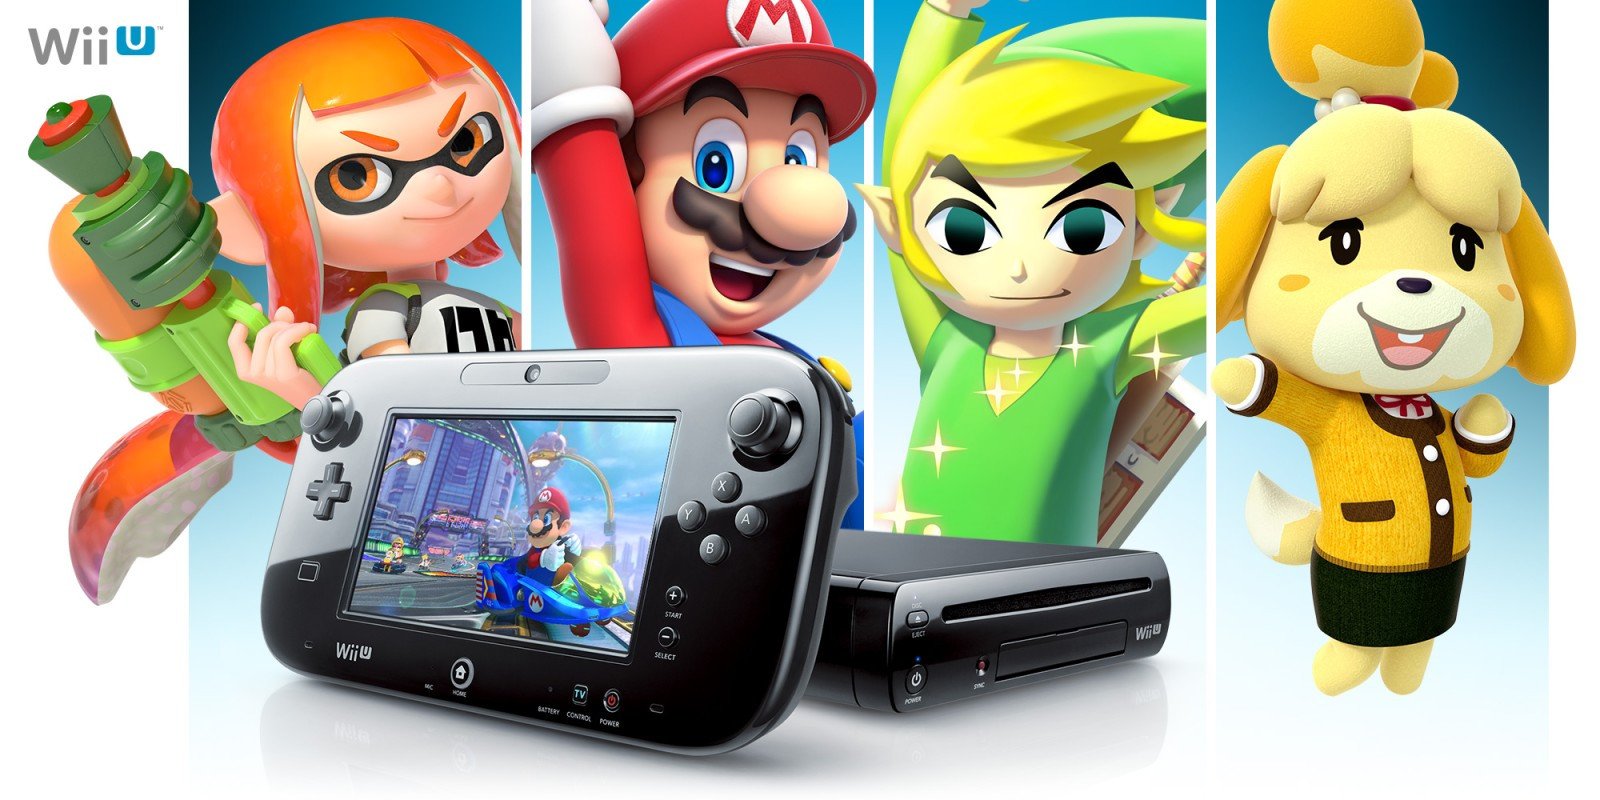 Qualcuno è riuscito a salvare Wii U e 3DS, da ora si può tornare a giocare online